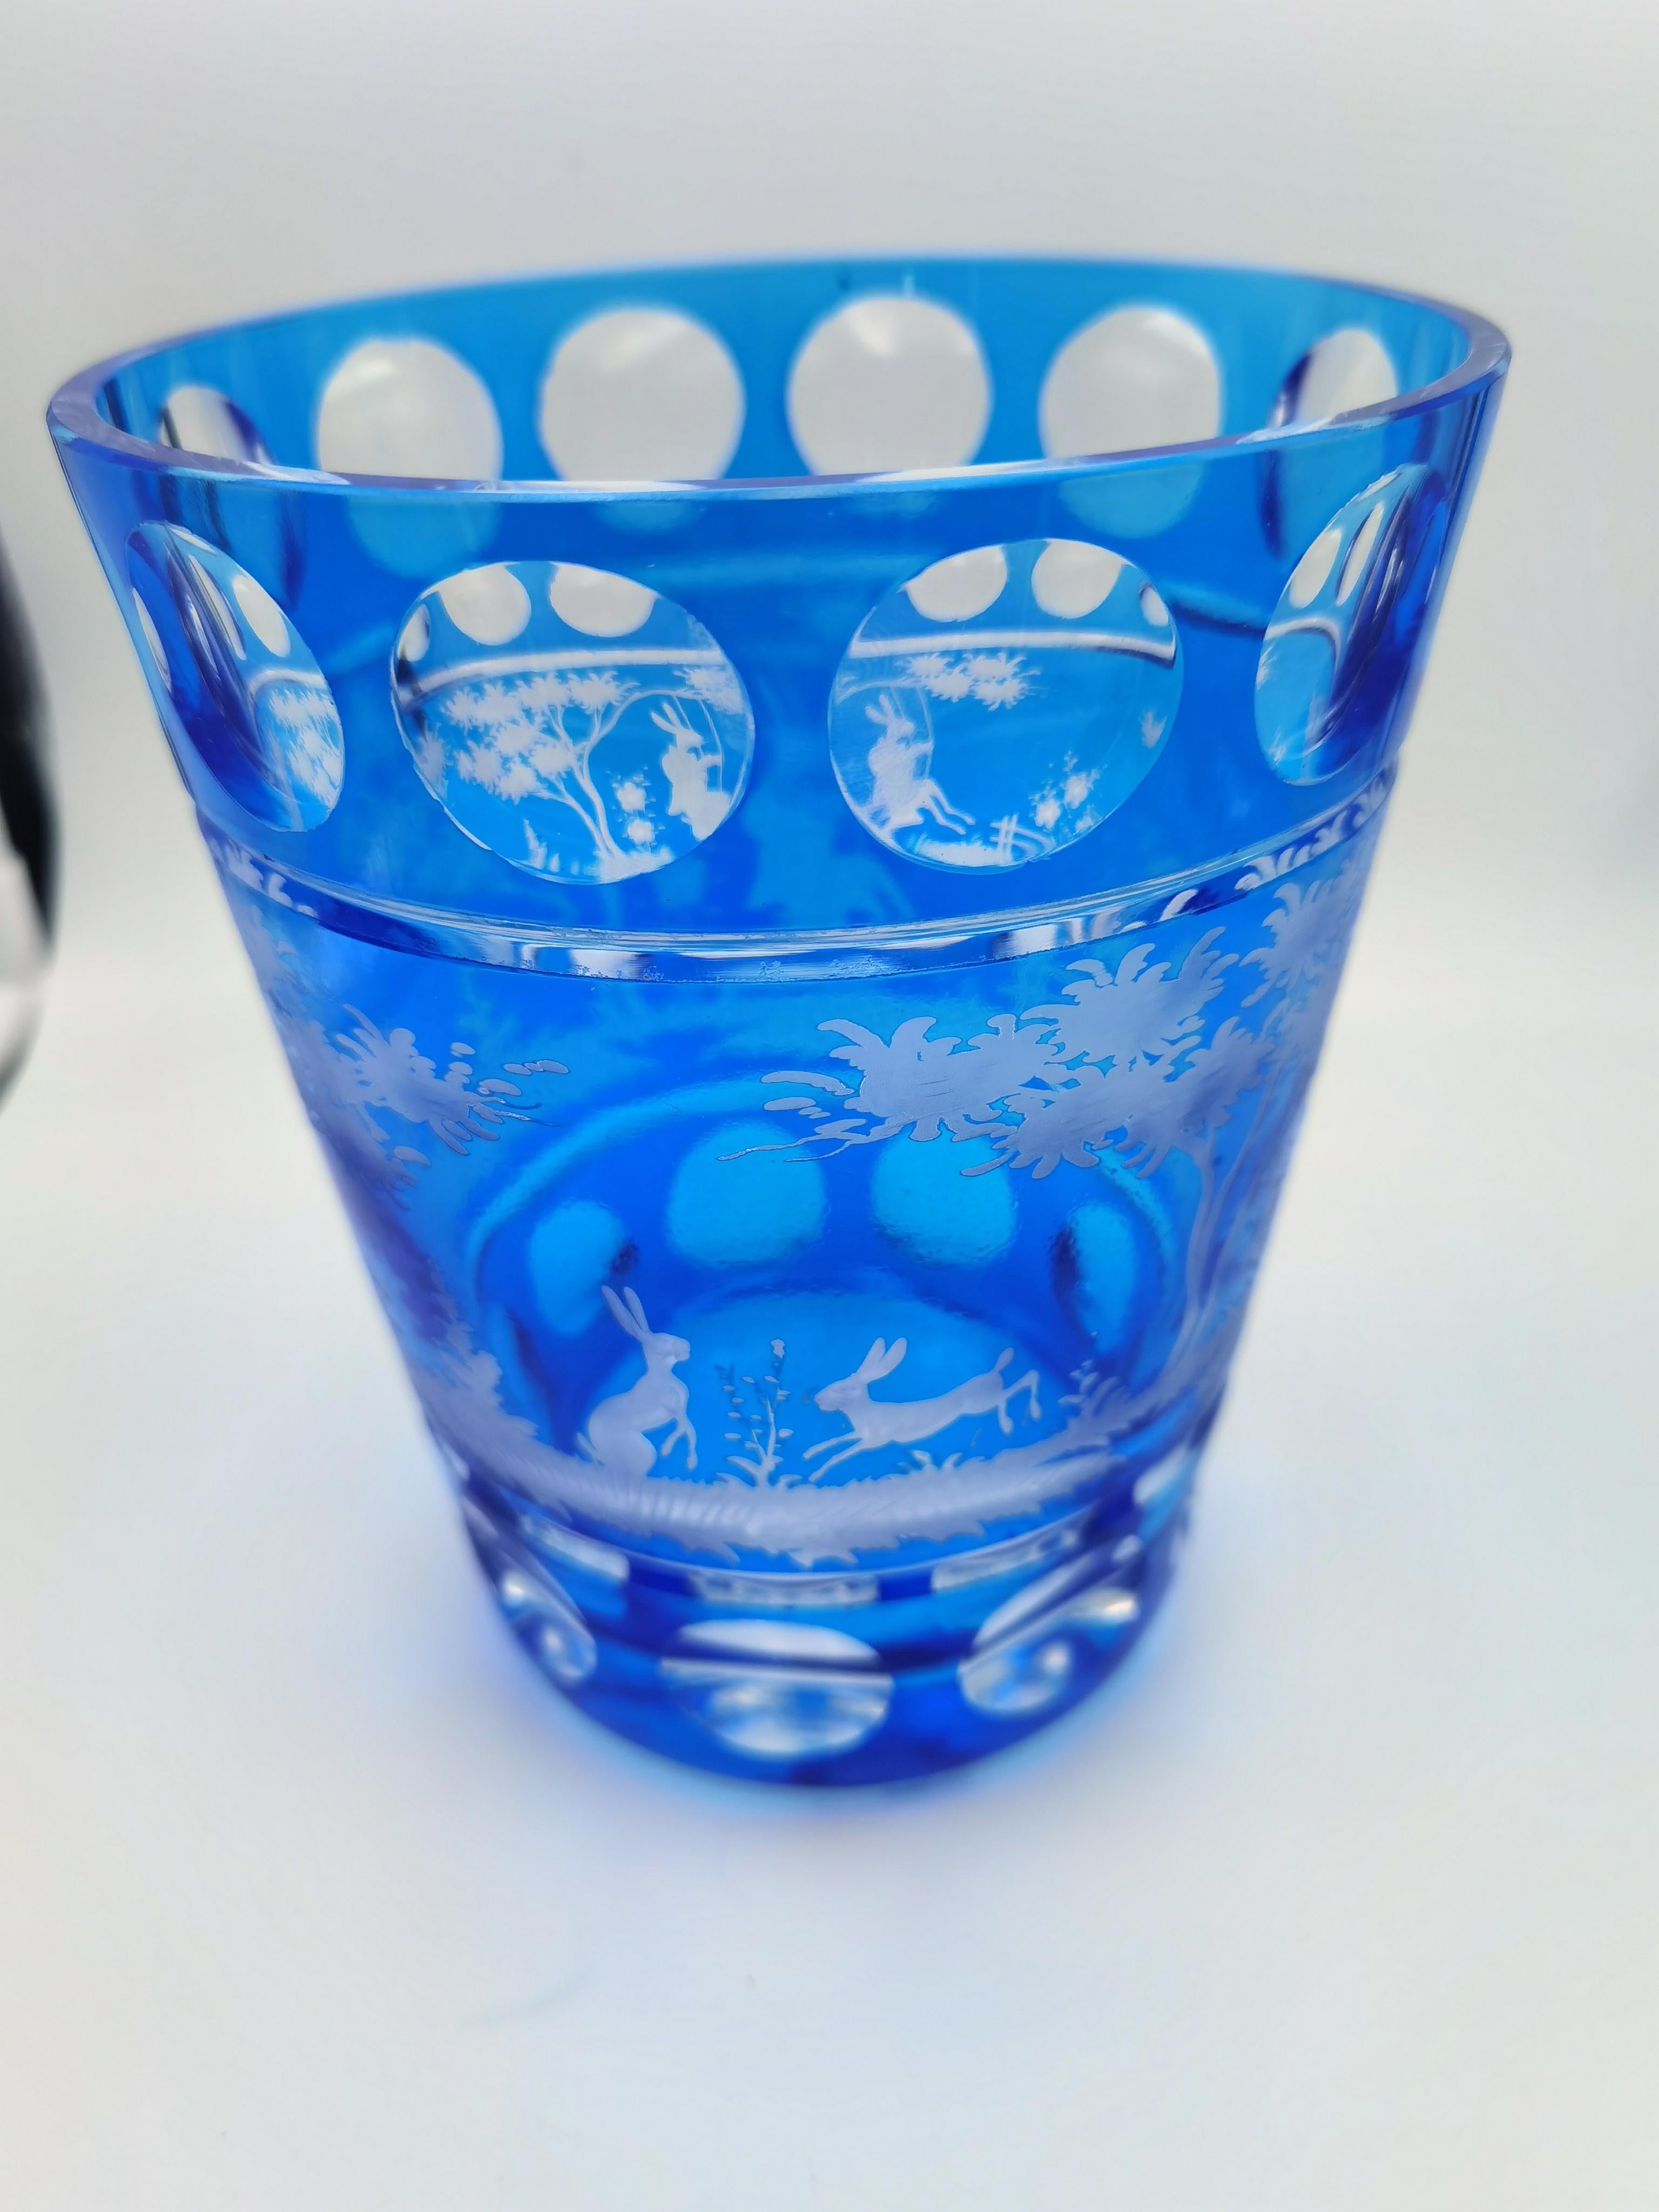 Vase en cristal soufflé à la main en verre bleu avec décor de lapin de Pâques tout autour. Les feuilles, les lapins et les arbres sont gravés à la main par des artistes verriers en Bavière/Allemagne. Le verre présenté ici est de couleur bleu foncé